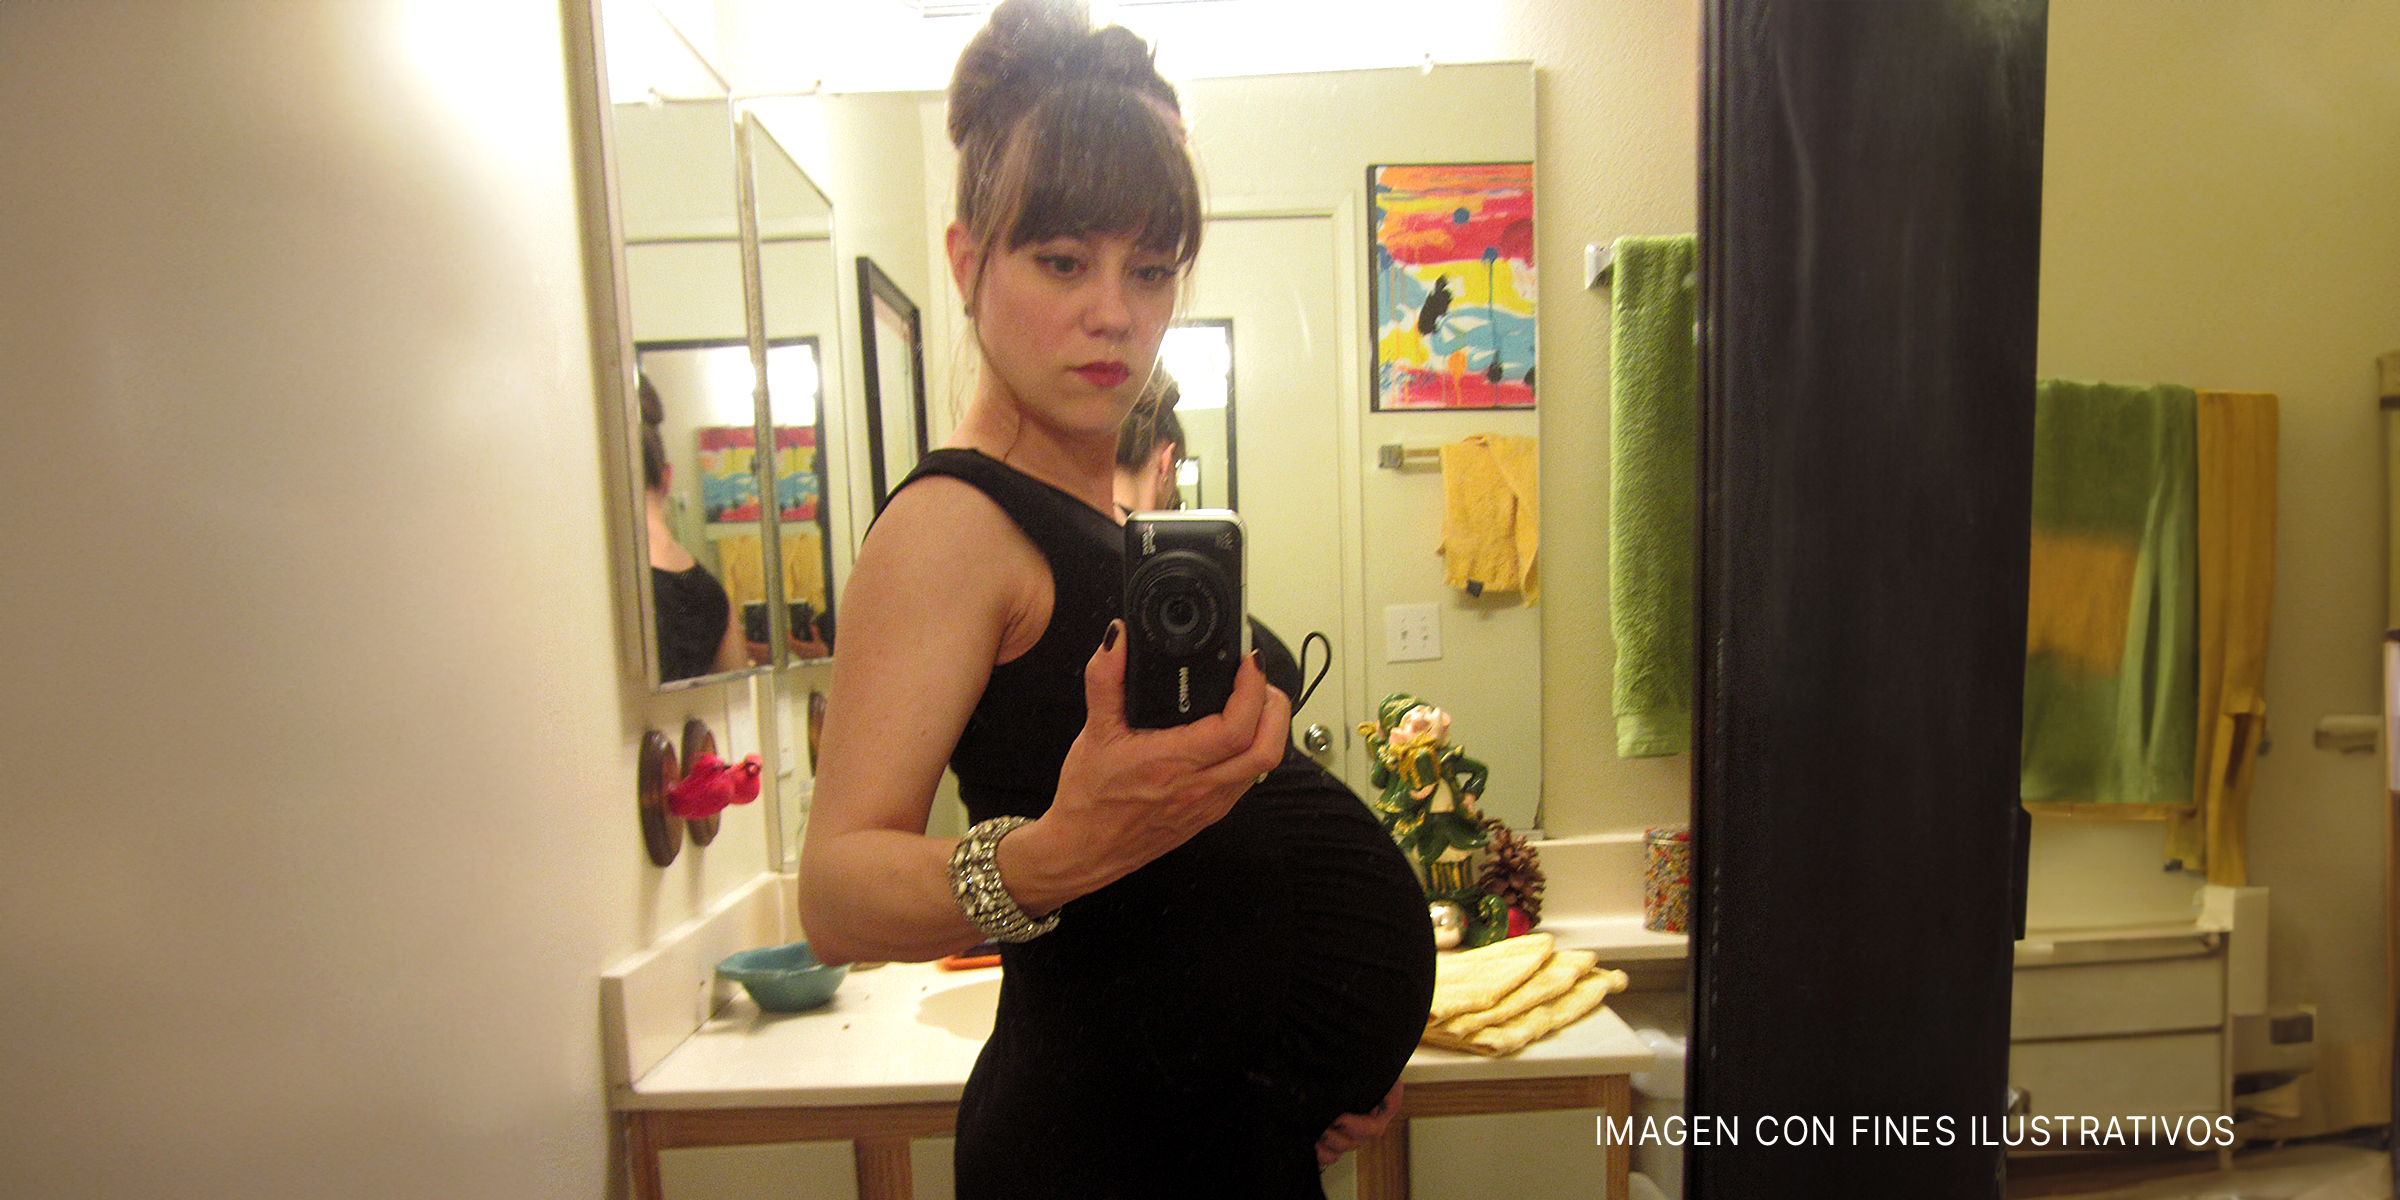 Una mujer embarazada tomándose un selfie | Foto: Flickr.com/Pretty Poo Eater (CC BY-SA 2.0)